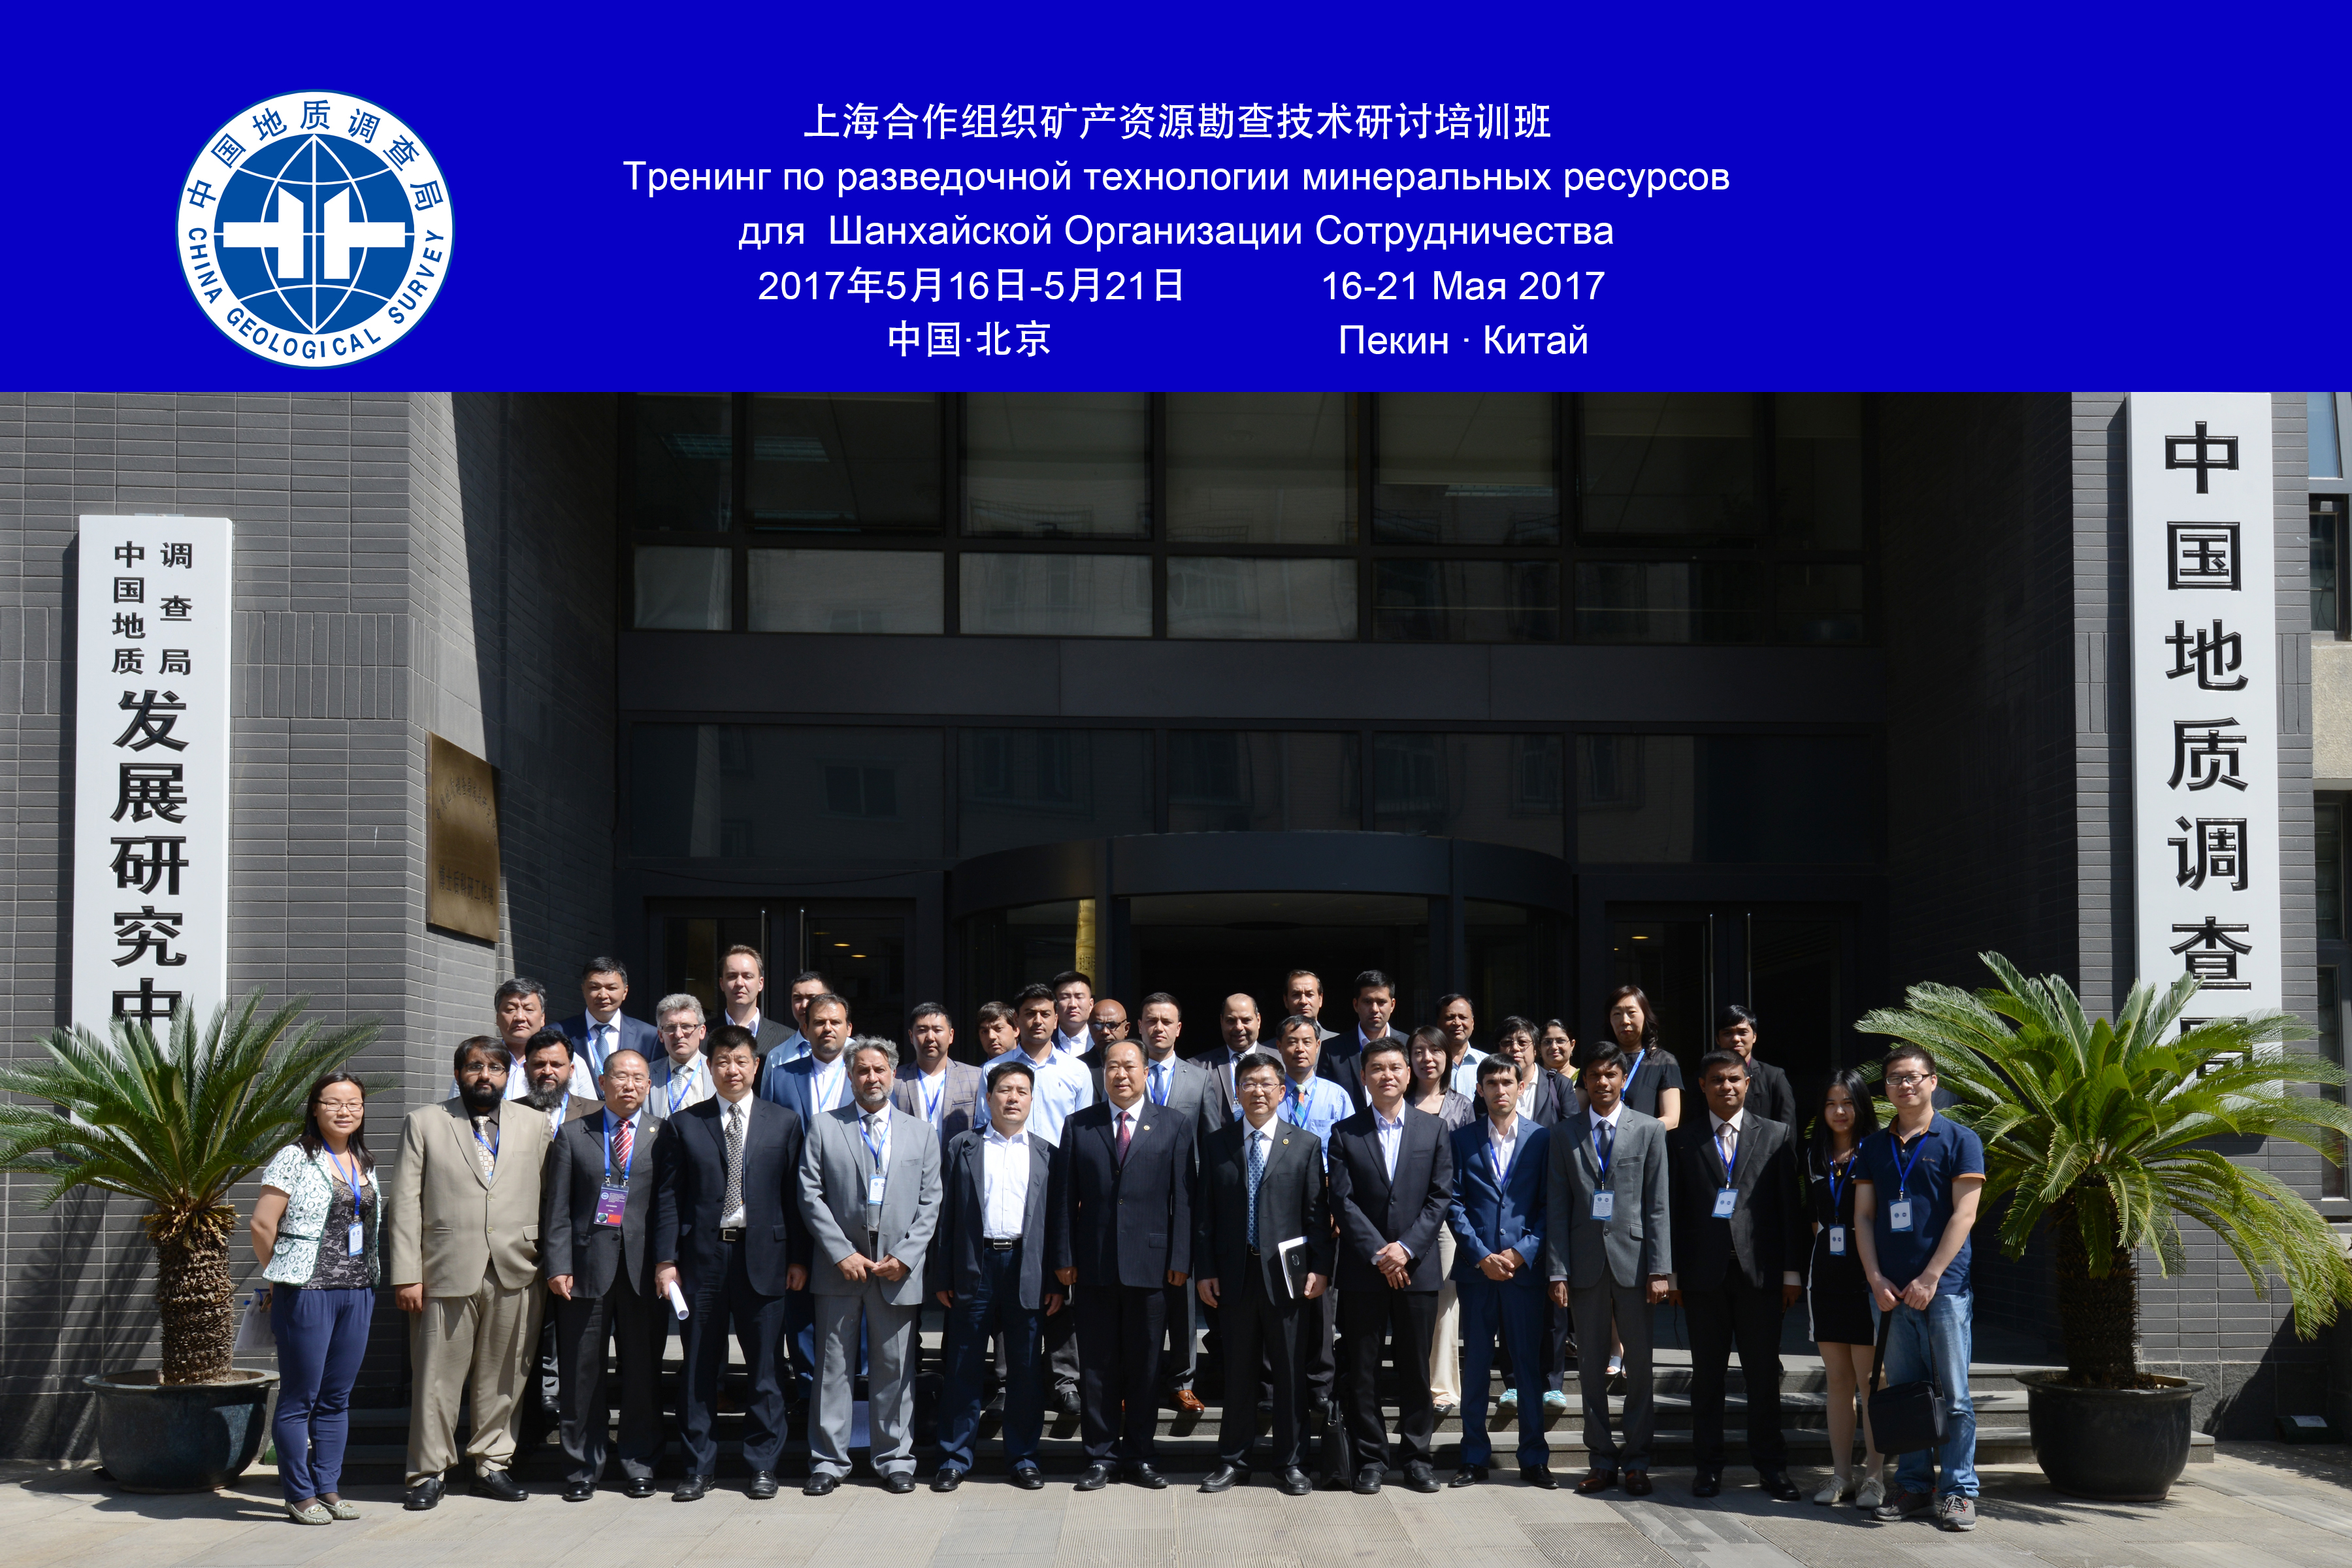 Встреча участников семинара у здания Геологической службы Китая.